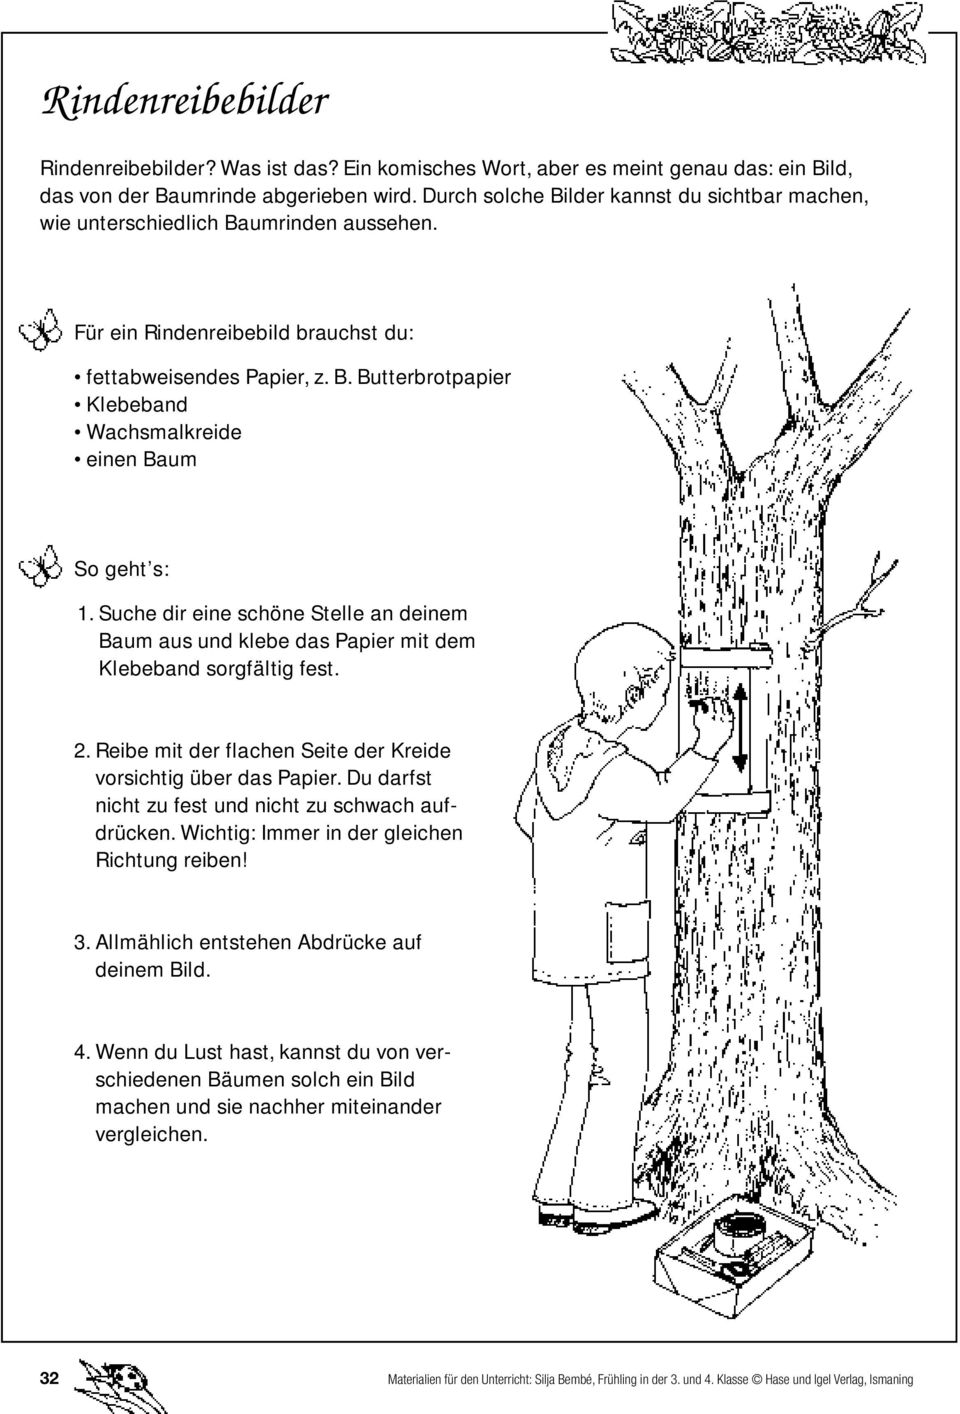 Suche dir eine schöne Stelle an deinem Baum aus und klebe das Papier mit dem Klebeband sorgfältig fest. 2. Reibe mit der flachen Seite der Kreide vorsichtig über das Papier.